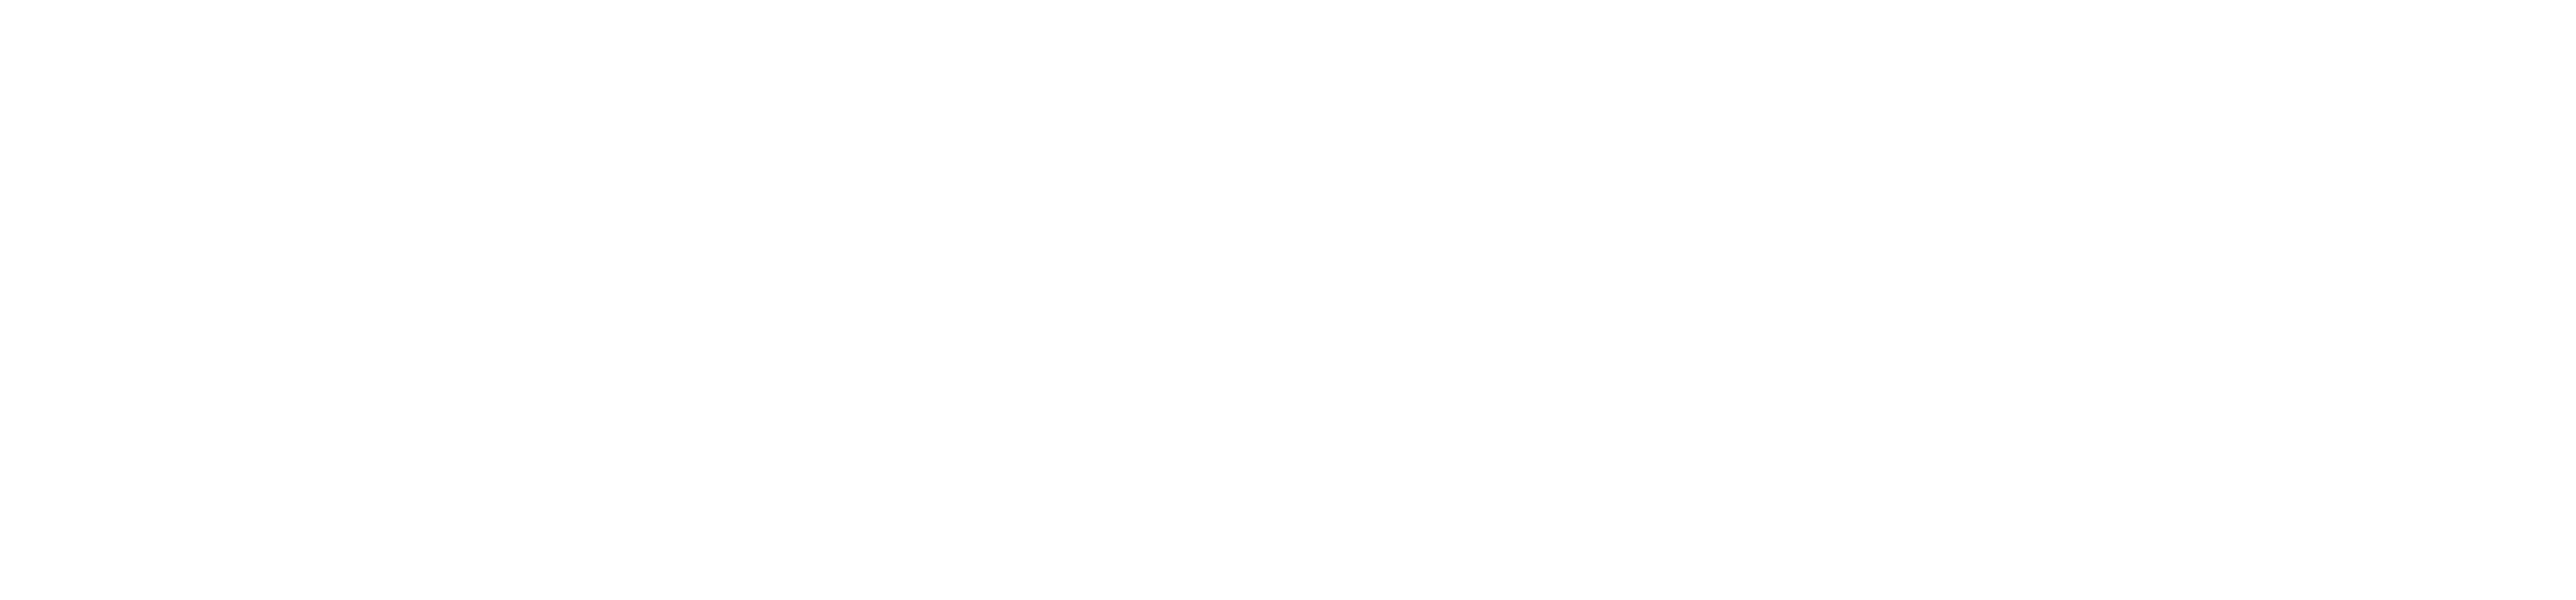 La Calle Del Fantasma - Calligraphy Clipart (3186x1071), Png Download